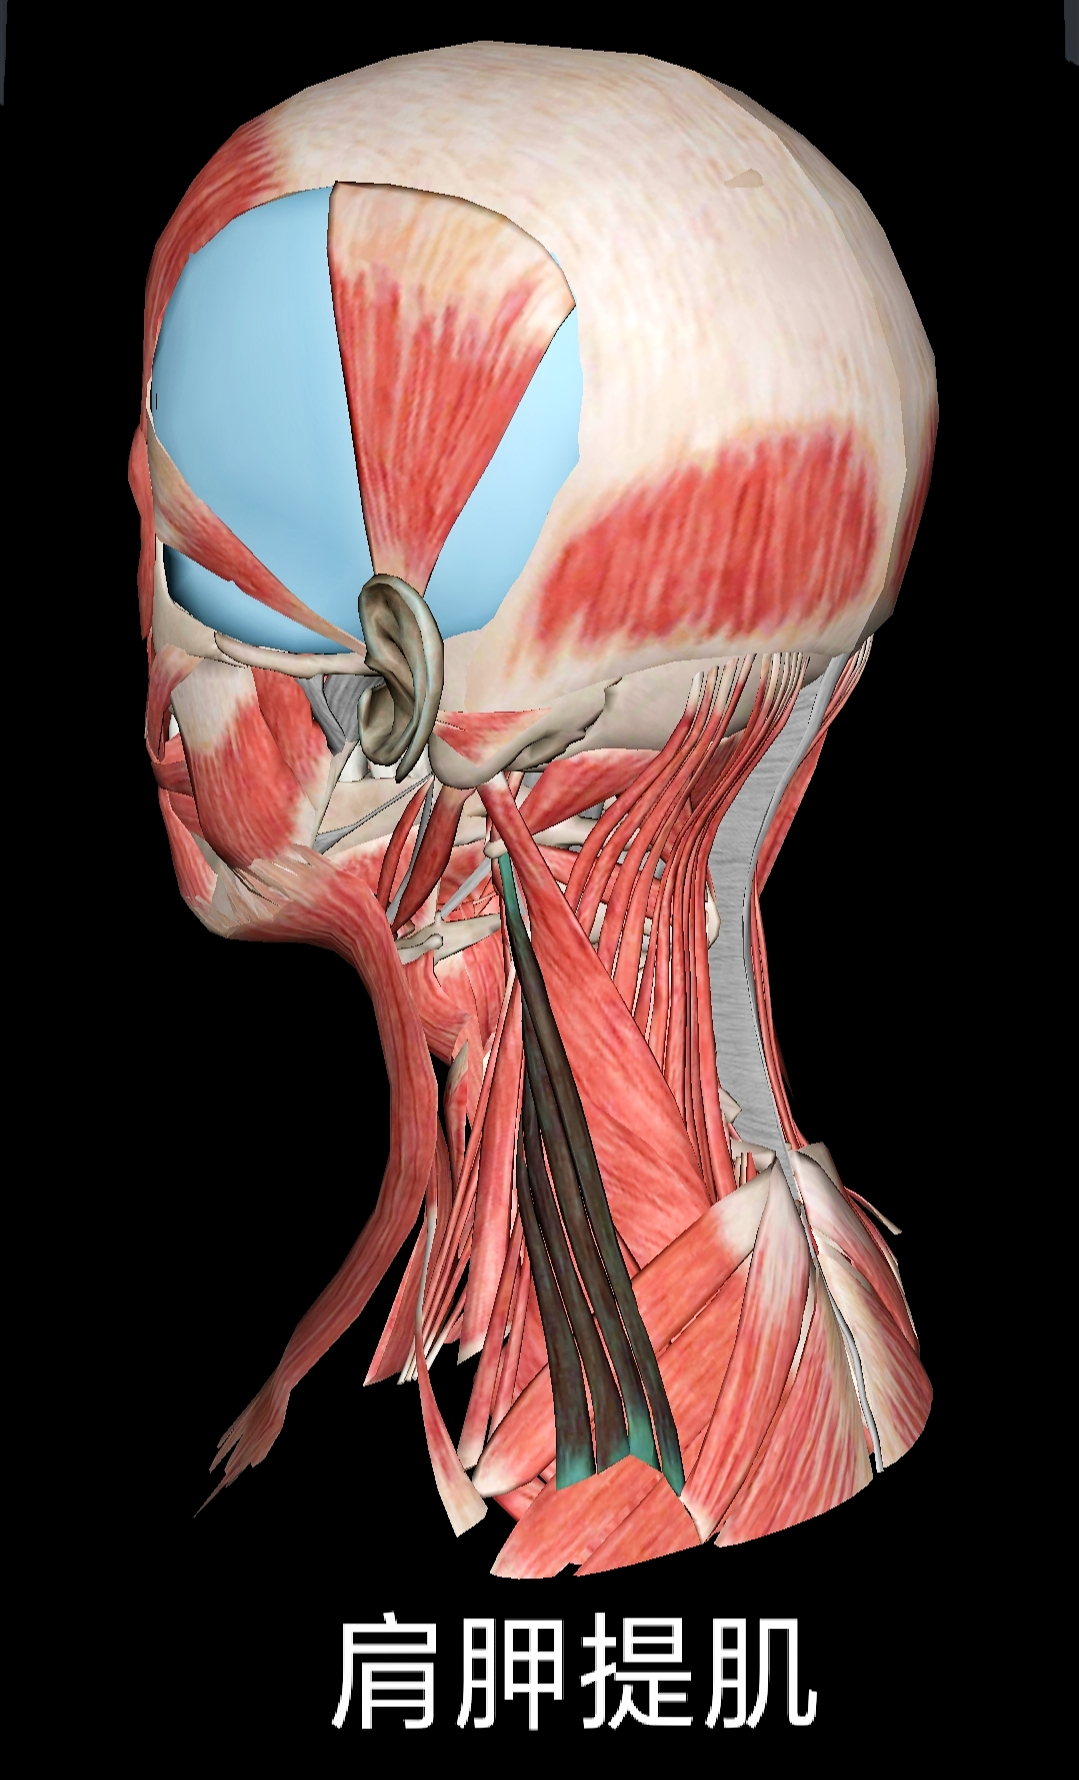 浅谈颈部解剖之“肌肉”